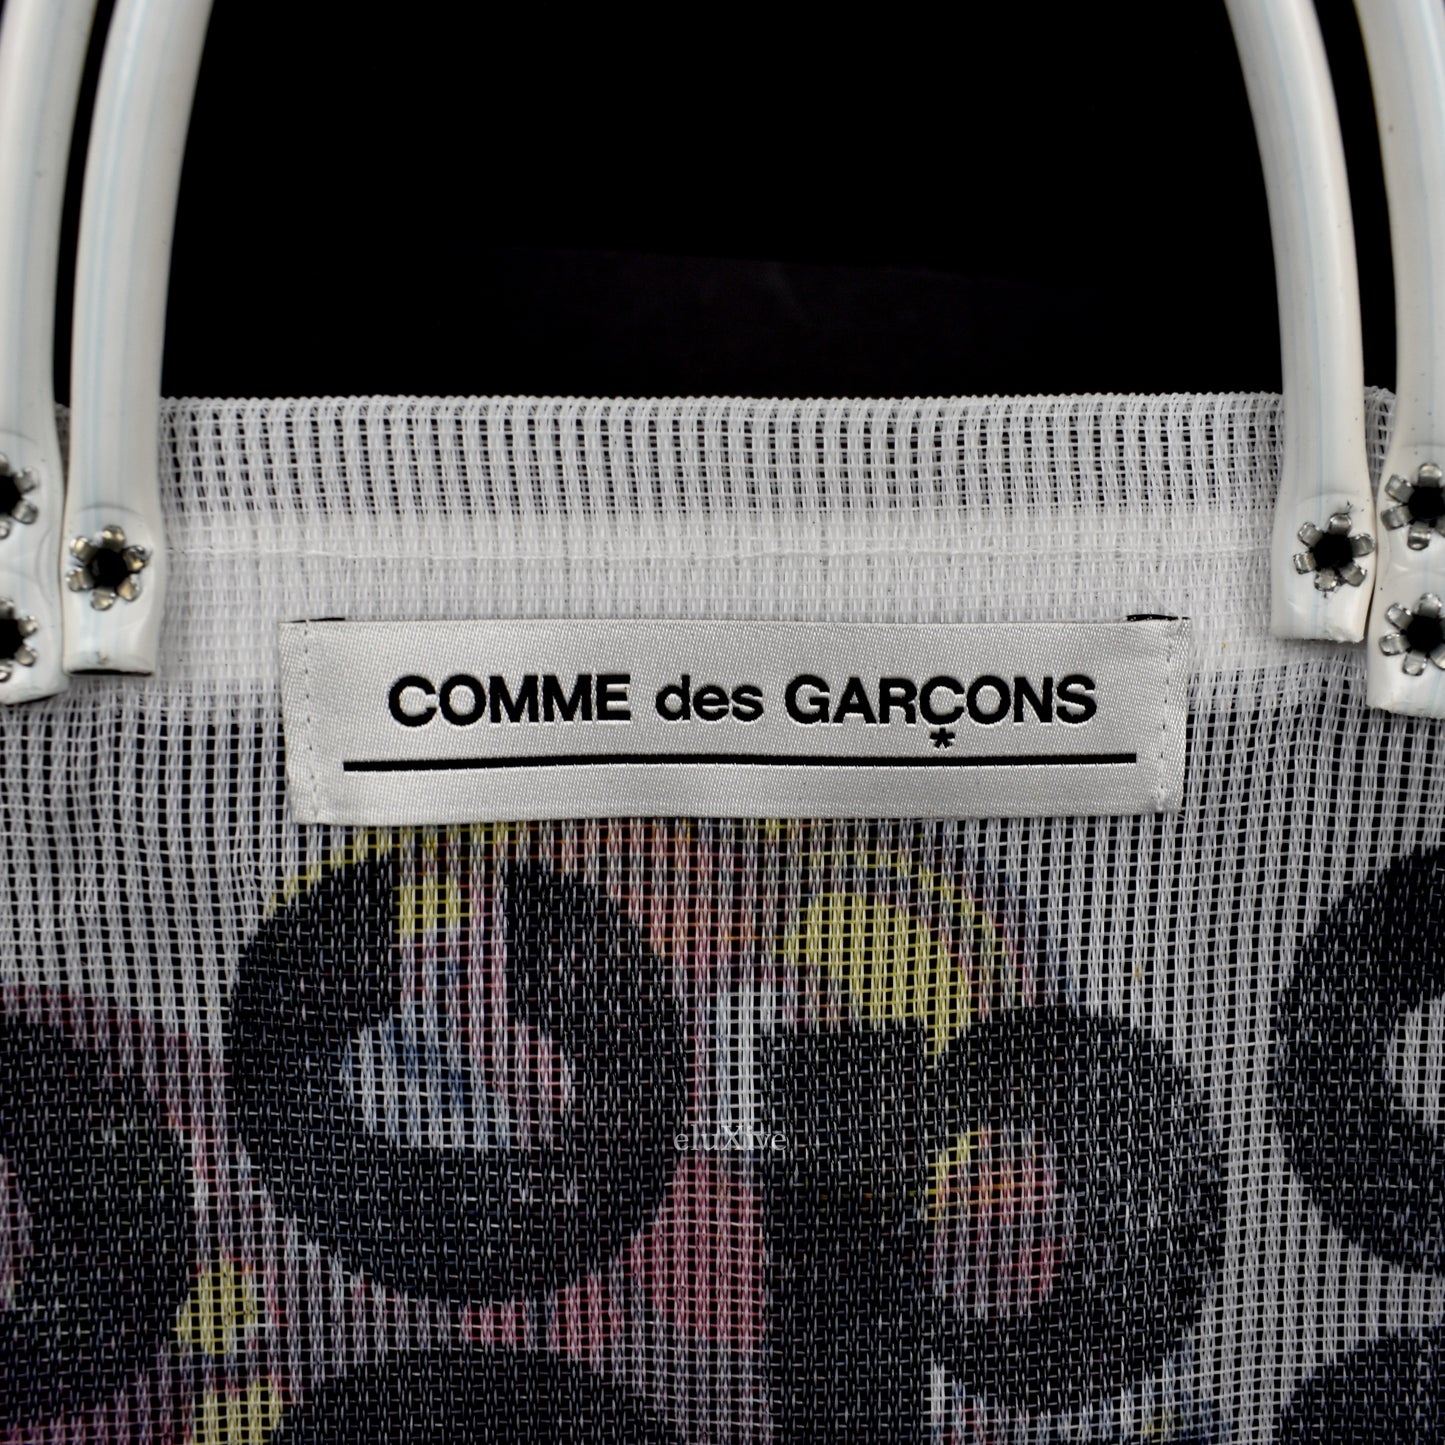 Comme des Garcons - Frida CDG Logo Overprint Mesh Bag